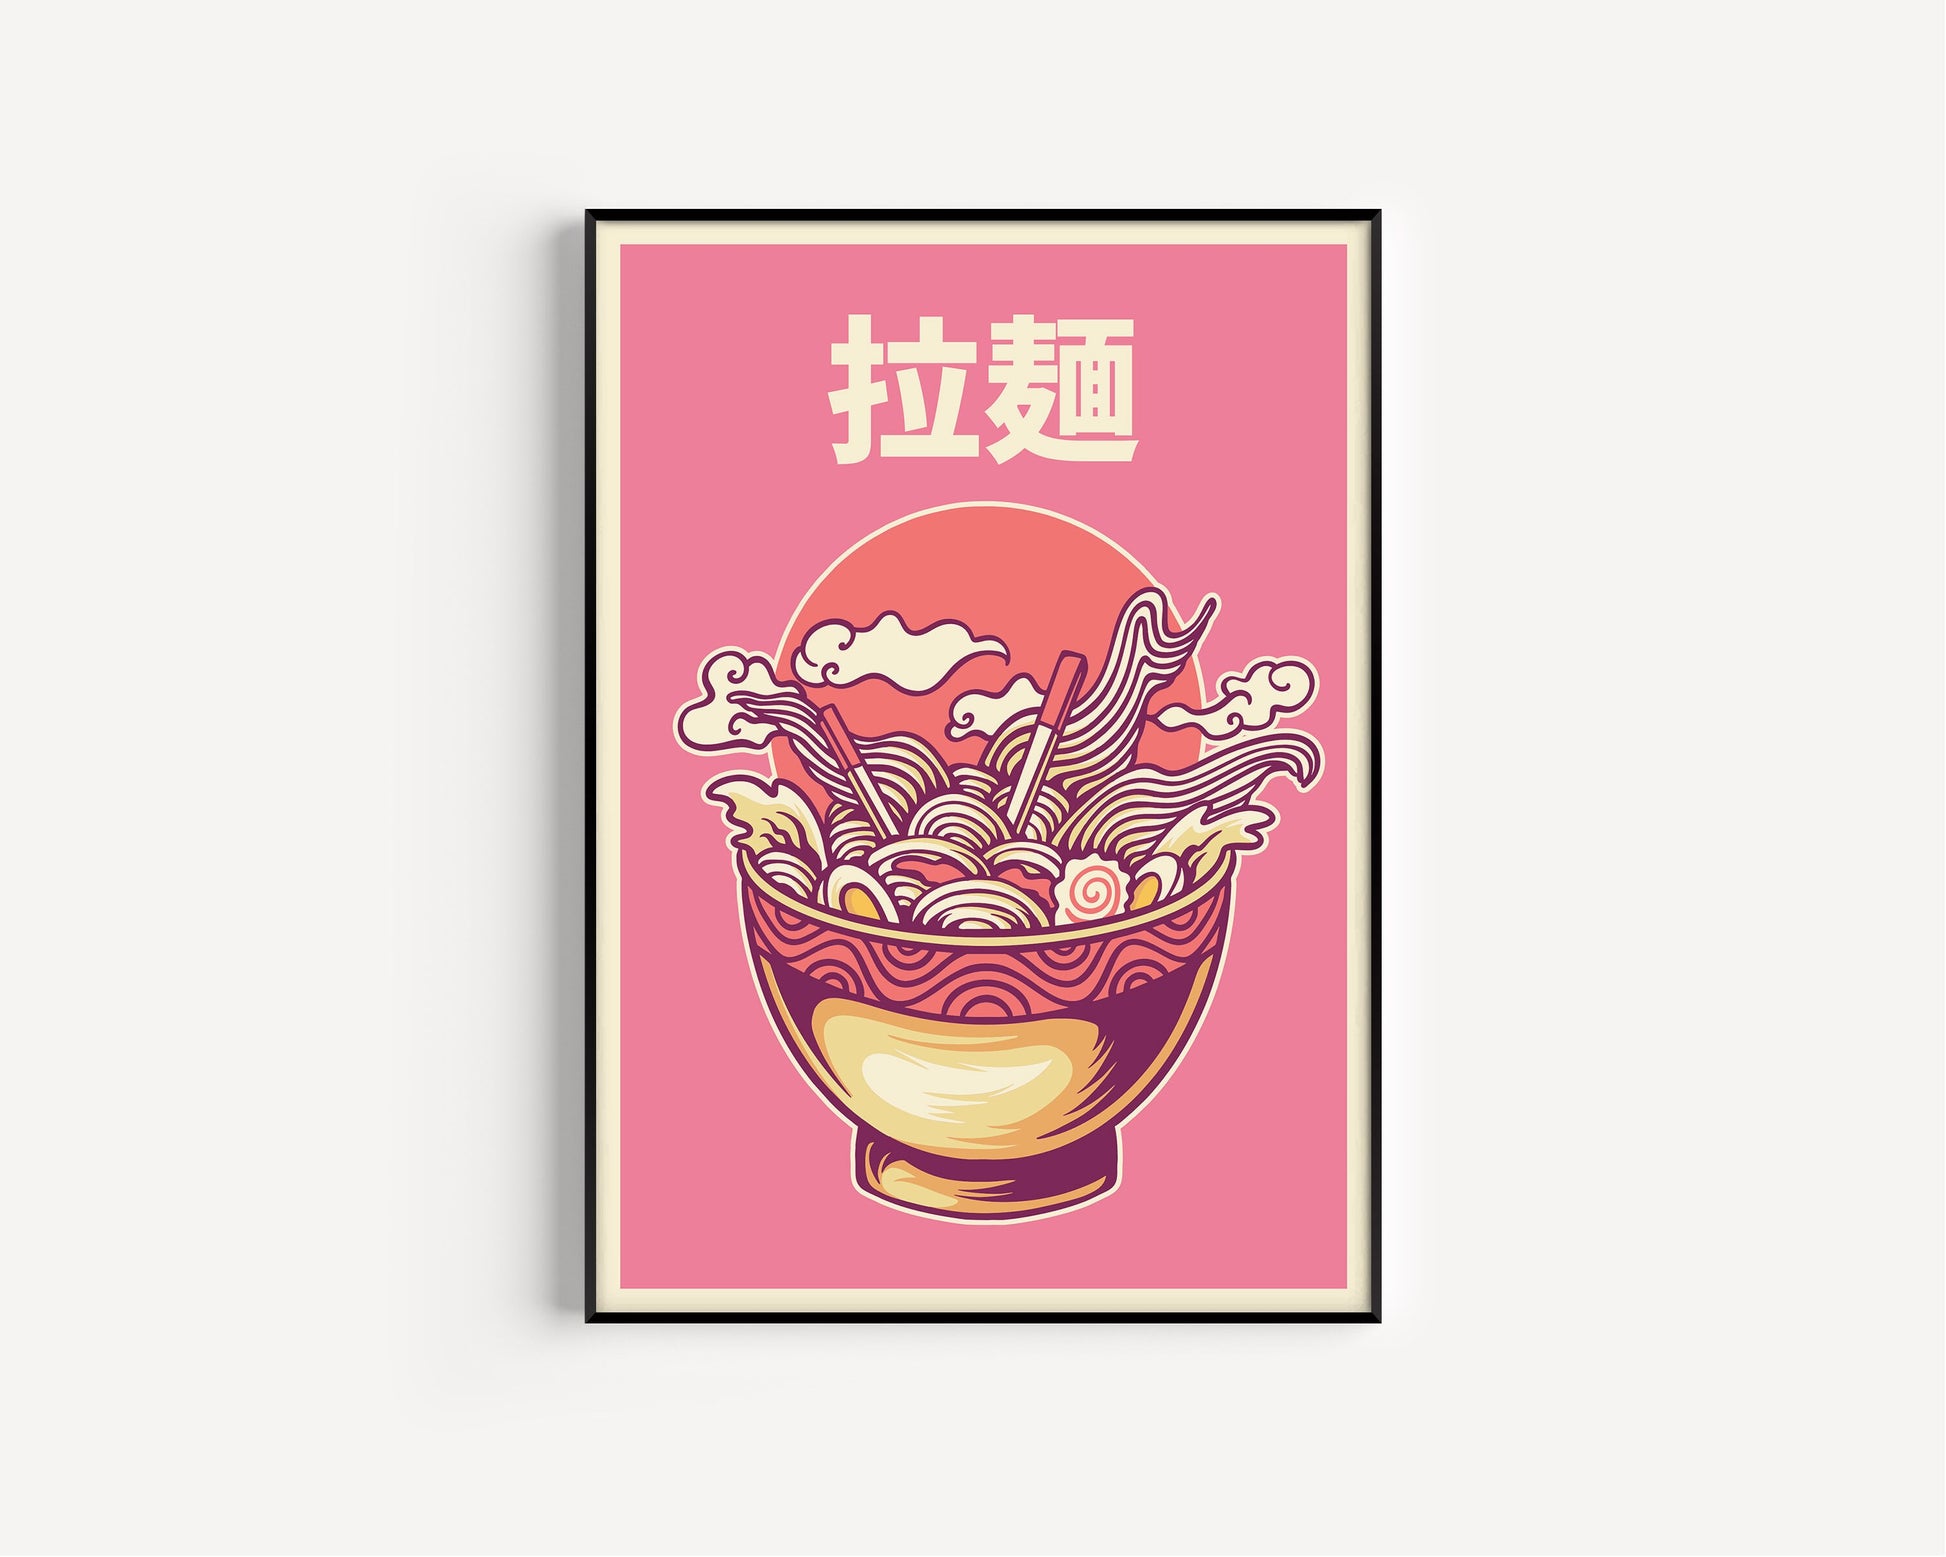 Japanese Ramen Noodles Illustrated Art Print, Japanese Wall Art, Ramen Noodles, Food Print, Kitchen Art, Ramen Wall Art, Kanji,